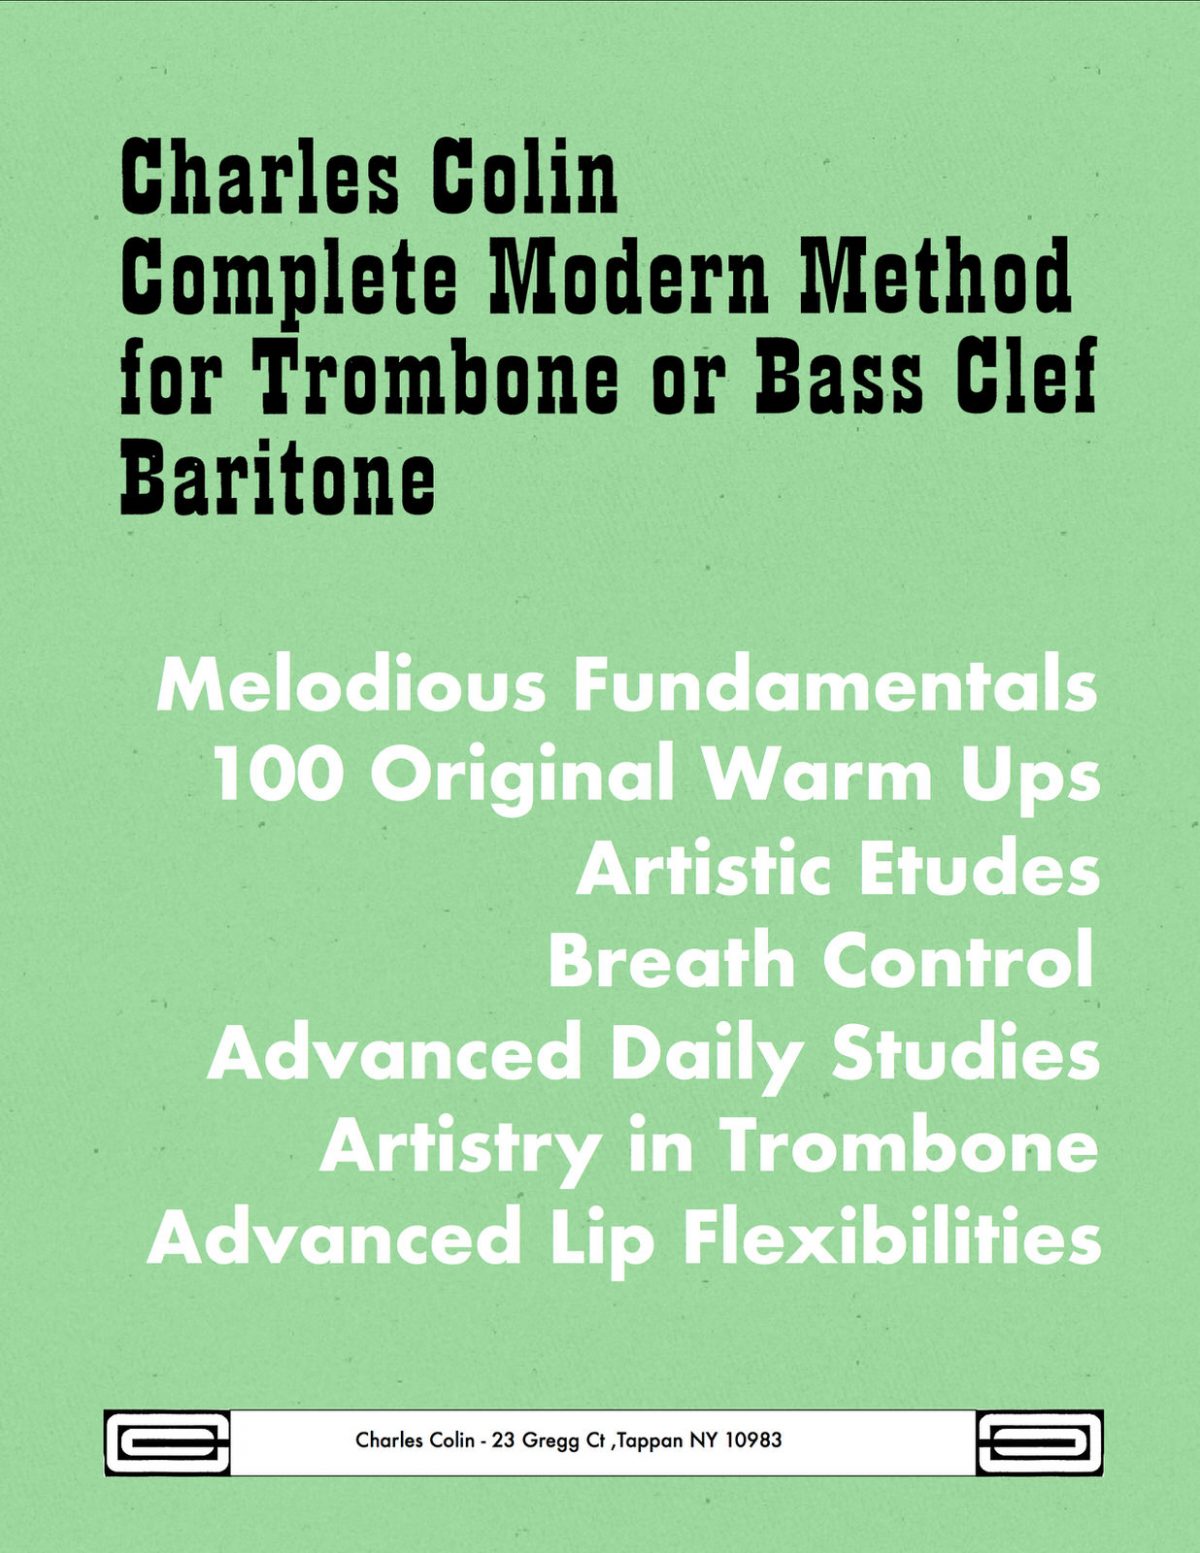 Colin's Complete Modern Method for Trombone